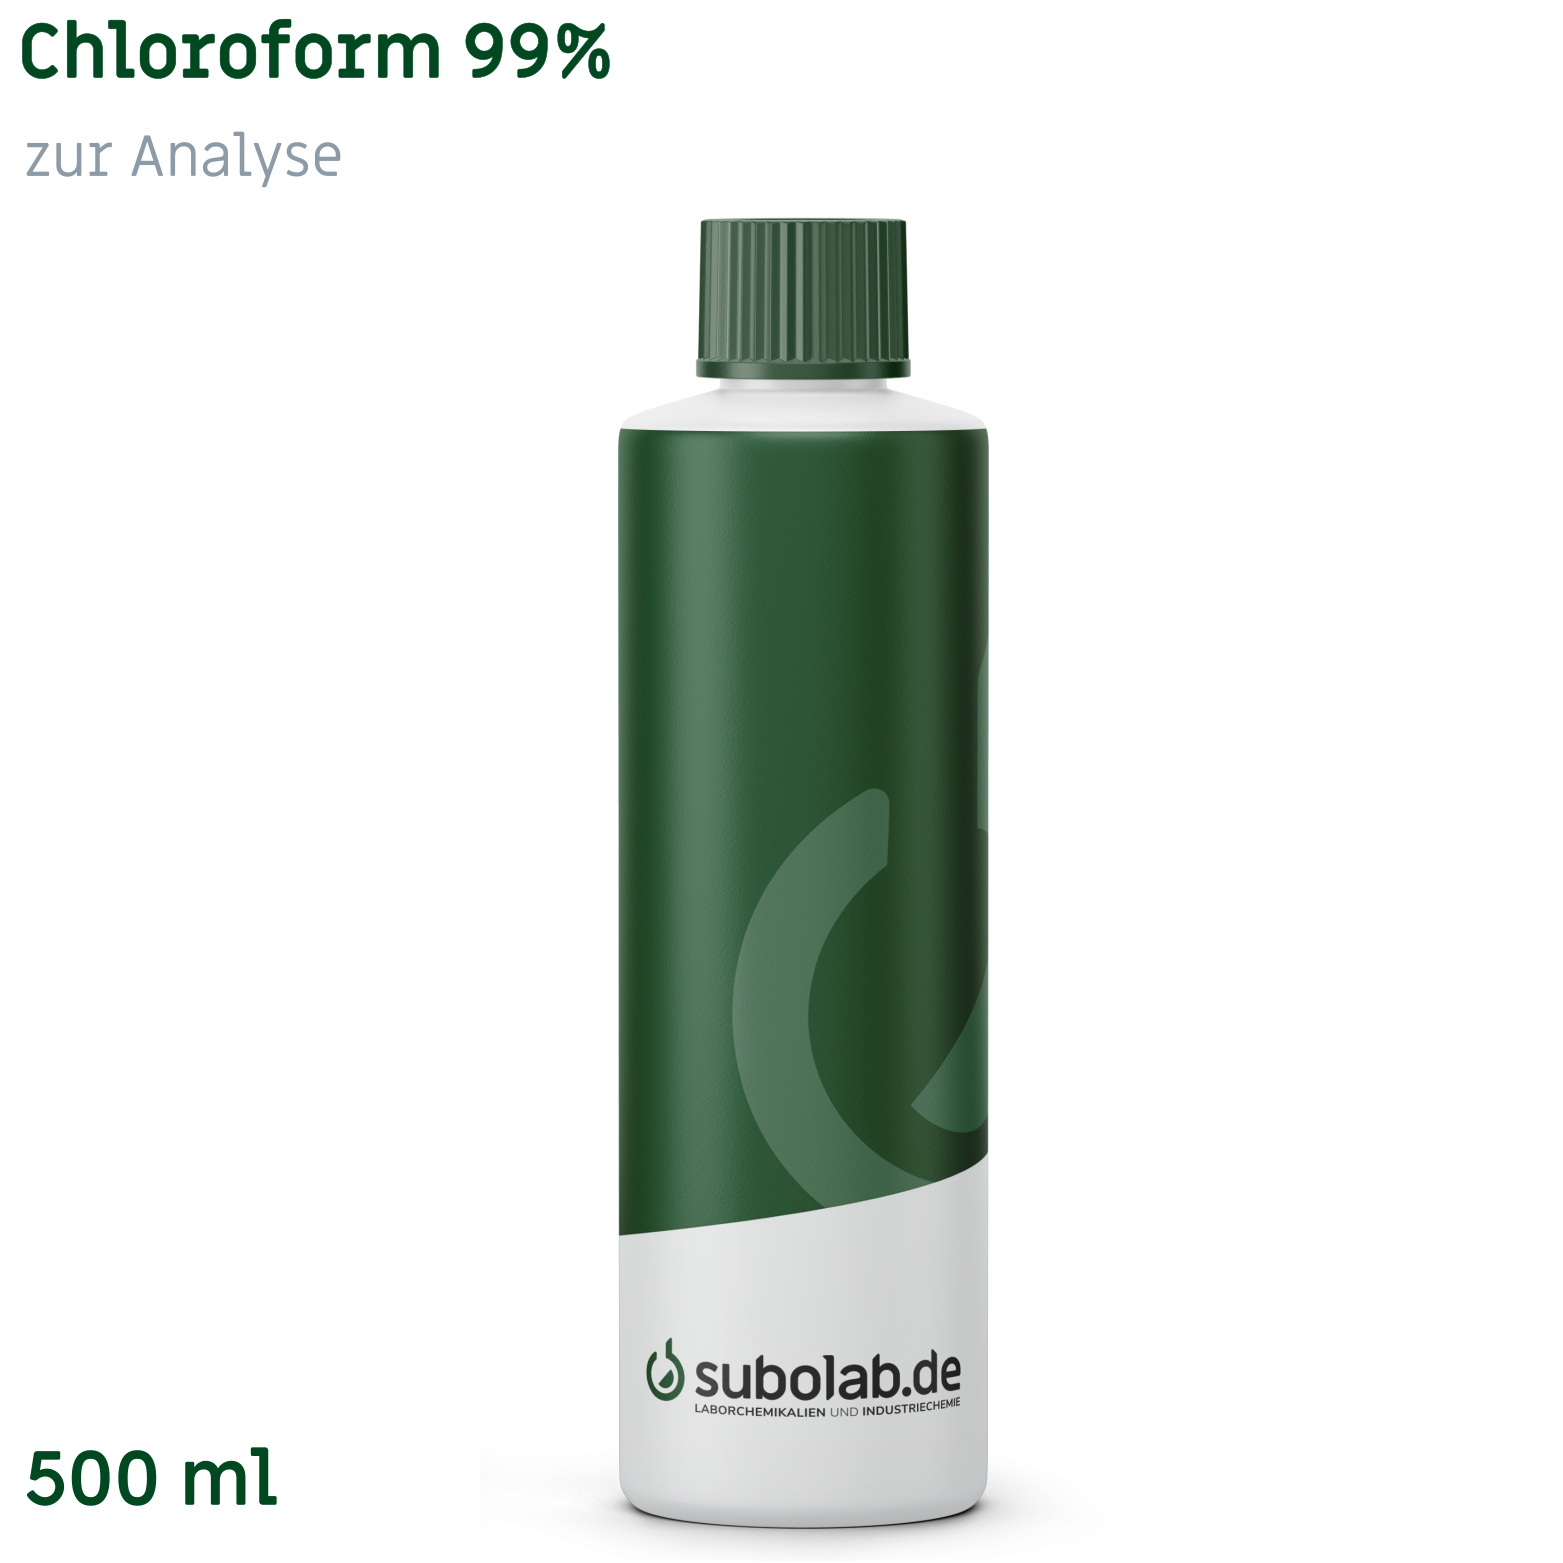 Bild von Chloroform 99% zur Analyse (500 ml)